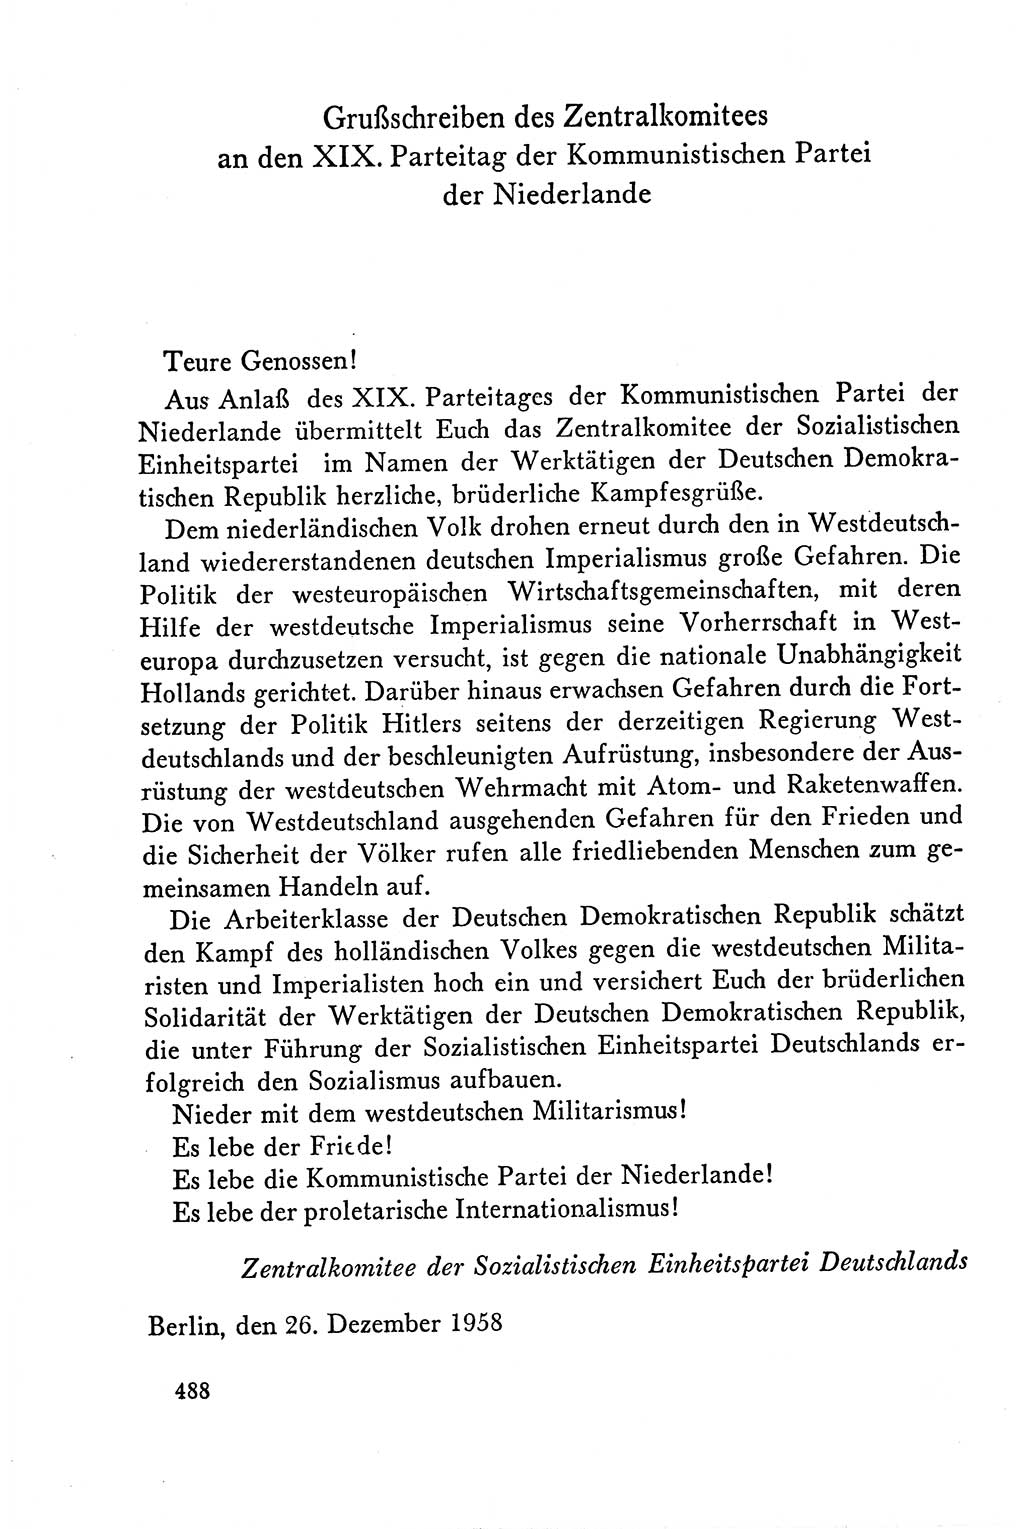 Dokumente der Sozialistischen Einheitspartei Deutschlands (SED) [Deutsche Demokratische Republik (DDR)] 1958-1959, Seite 488 (Dok. SED DDR 1958-1959, S. 488)